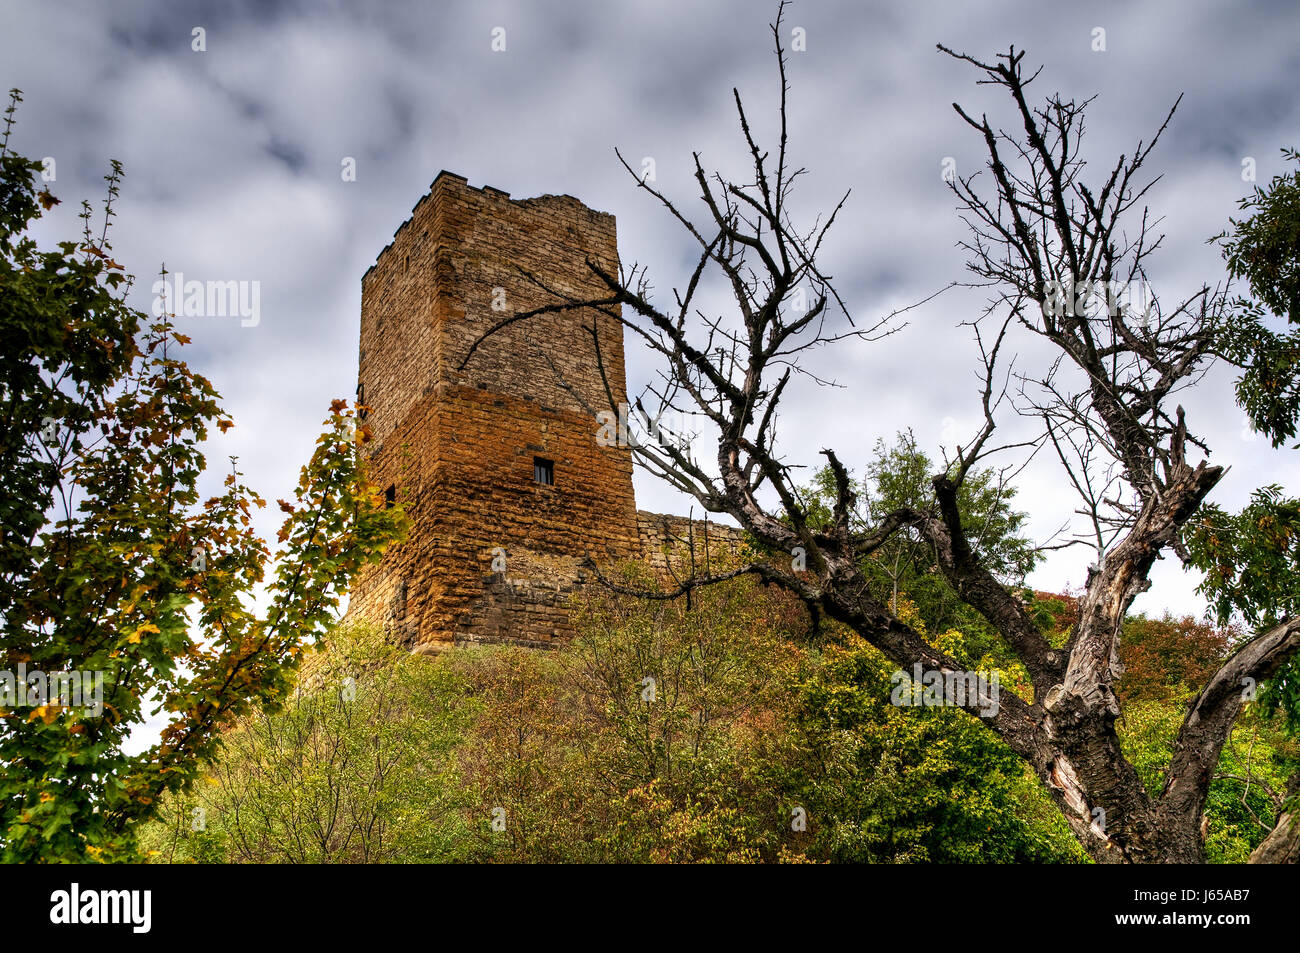 La ruina del castillo chateau de escombros de la edad media ruinas históricas ruinas turingia escombros Foto de stock